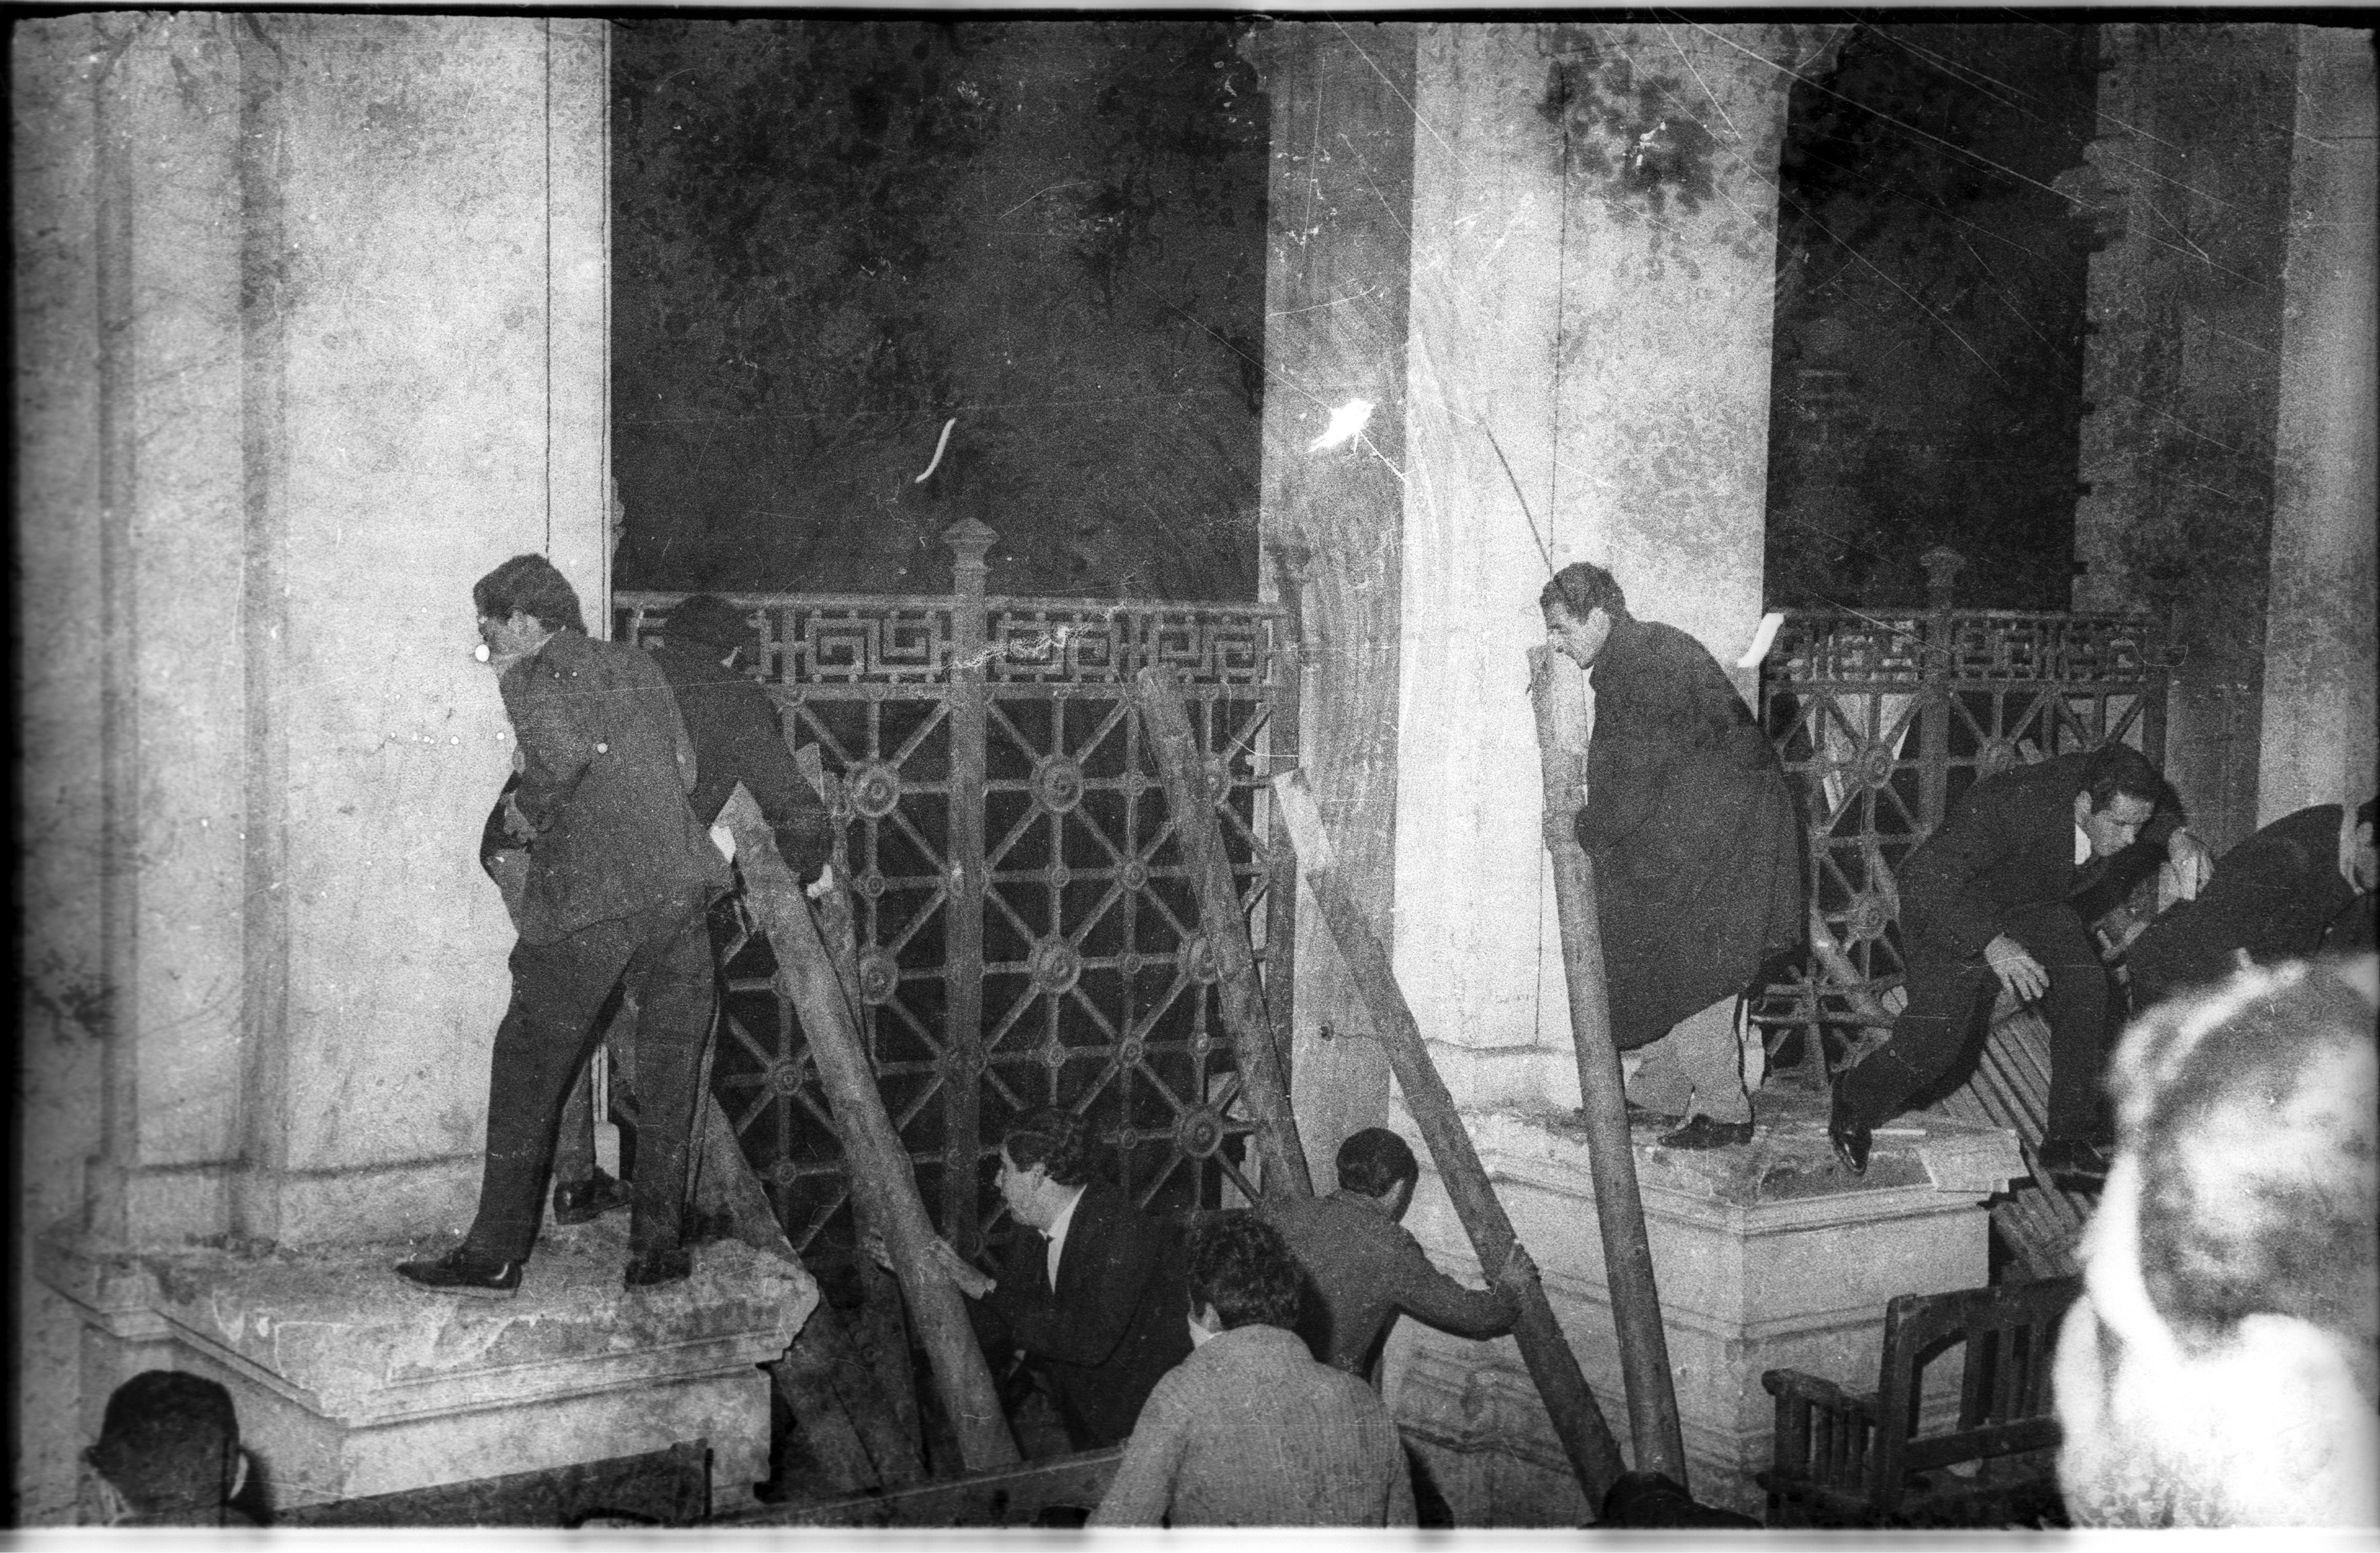 Estudiantes cercados por la policía, luego de la manifestación en rechazo a la ruptura de las relaciones diplomáticas entre Uruguay y Cuba. Universidad de la República. 09 de setiembre de 1964